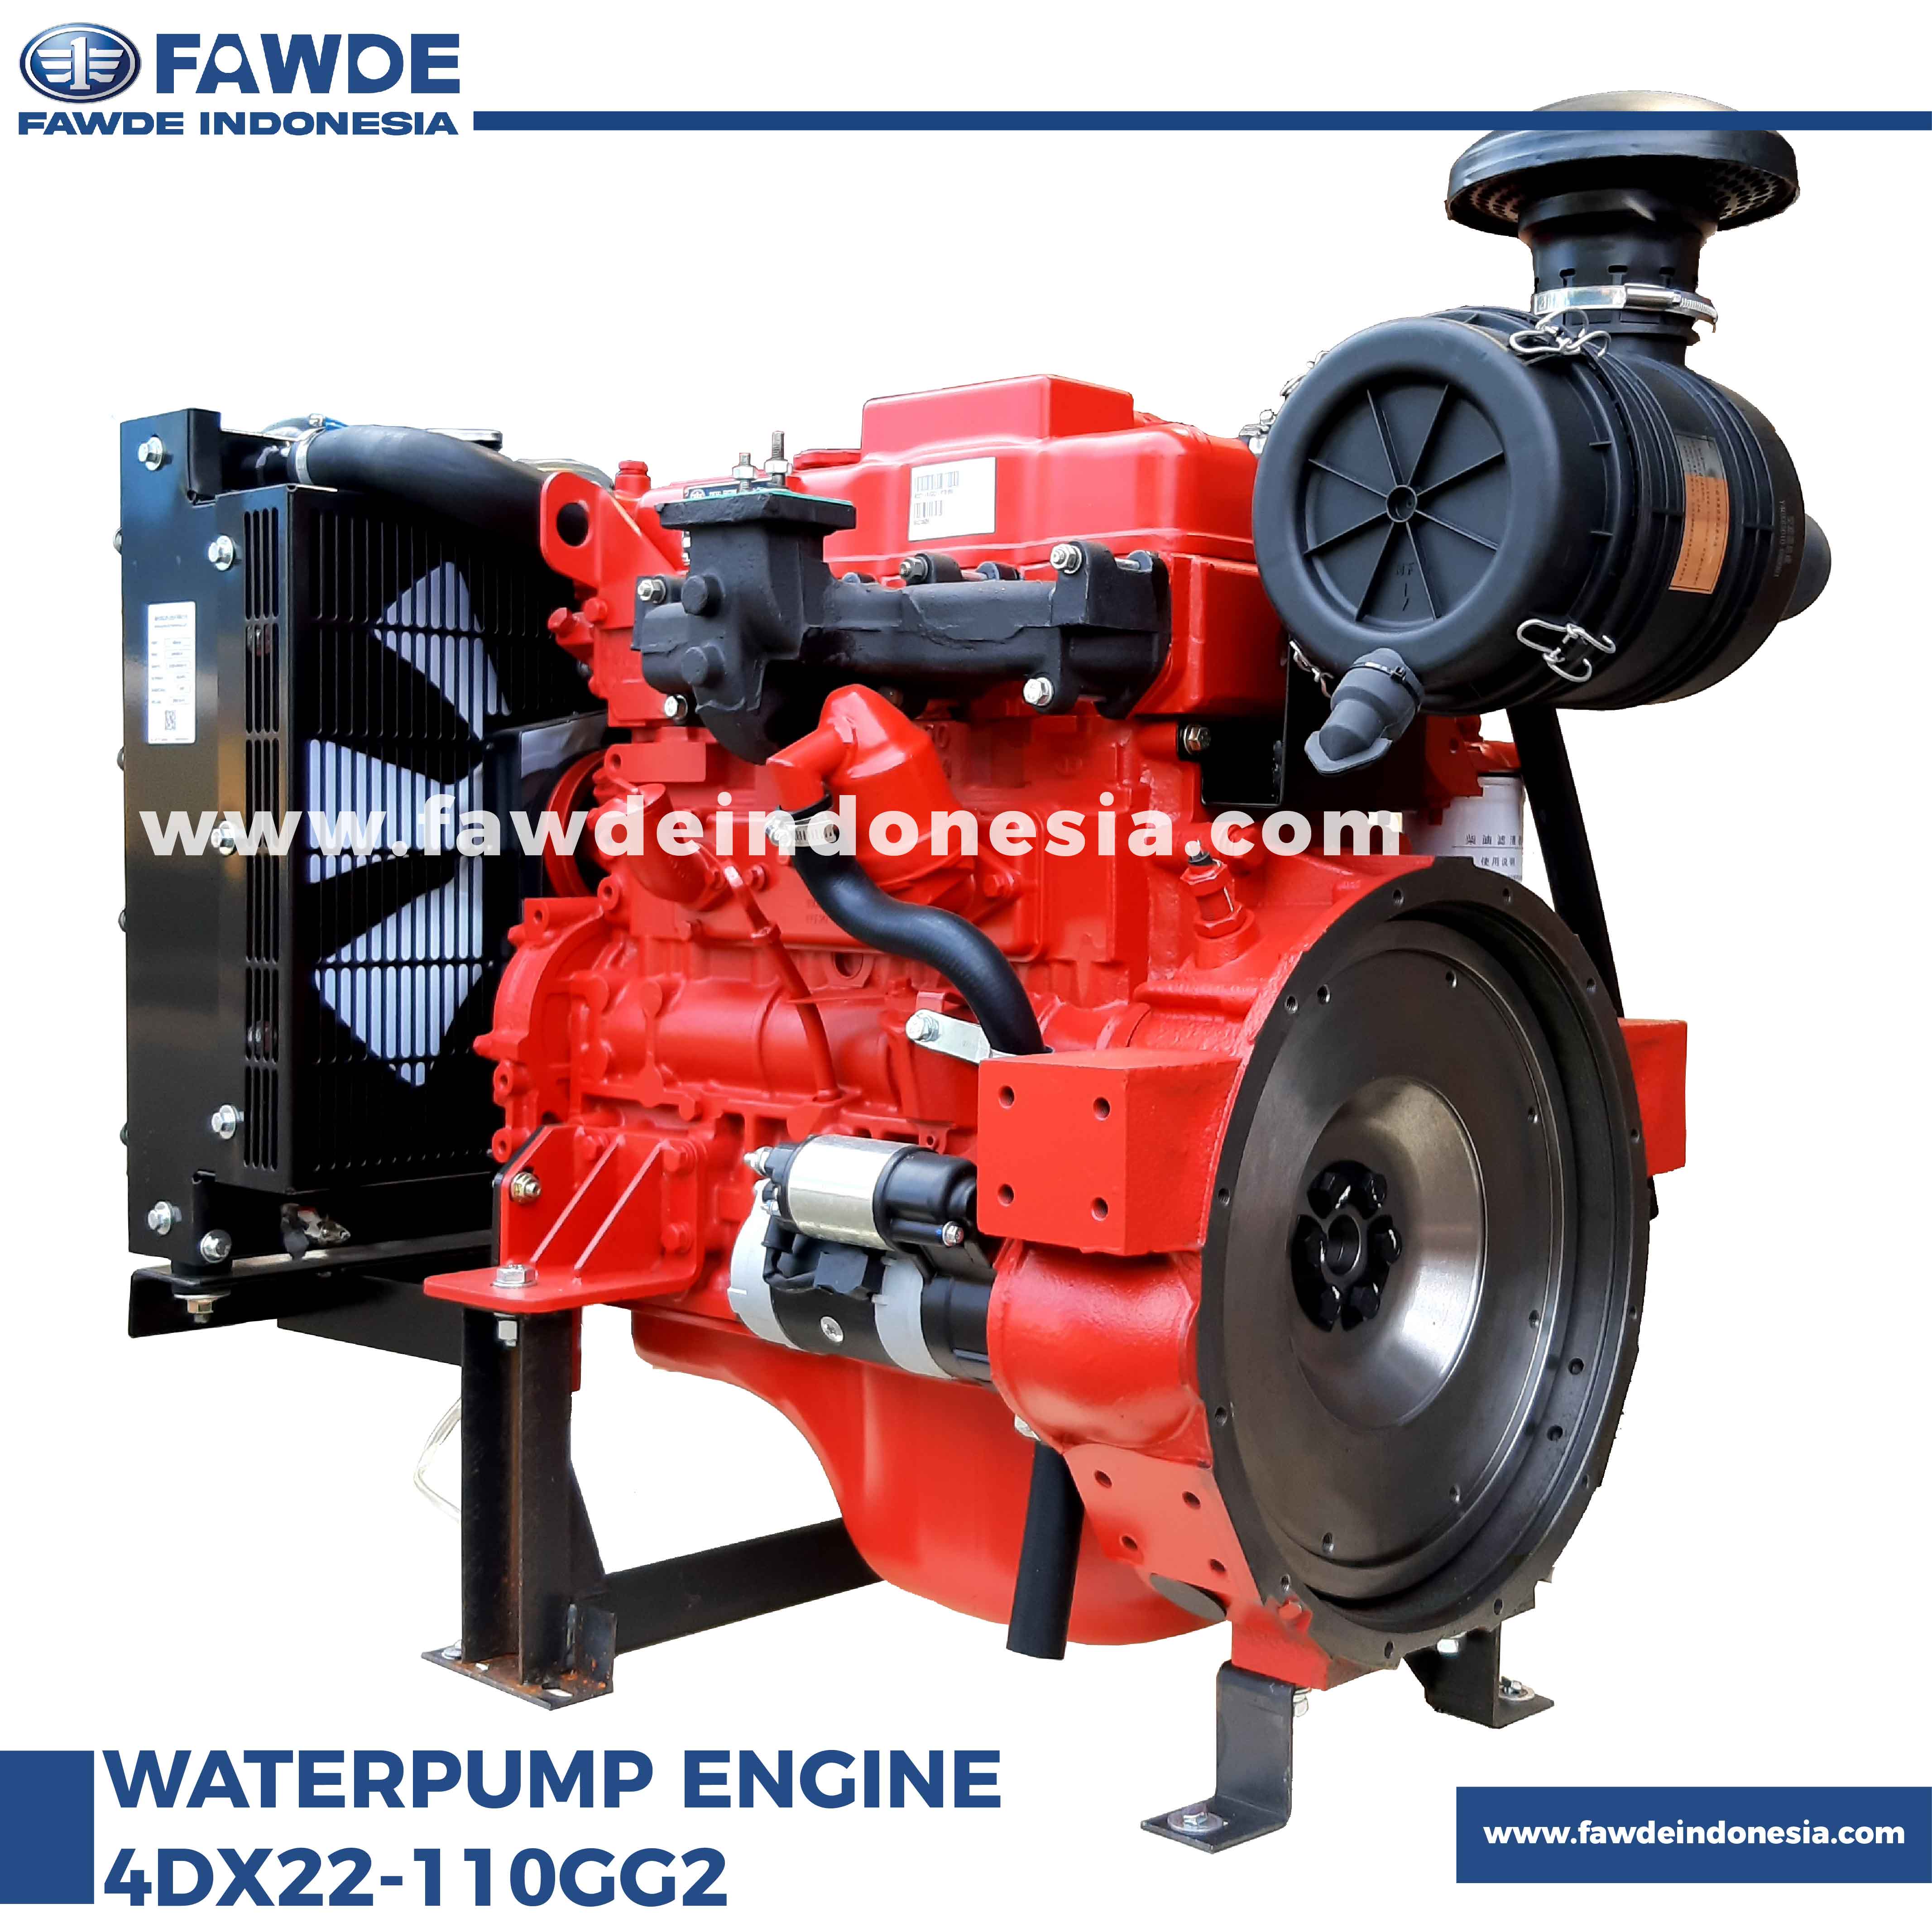 waterpump engine 4DX22-110GG2_1